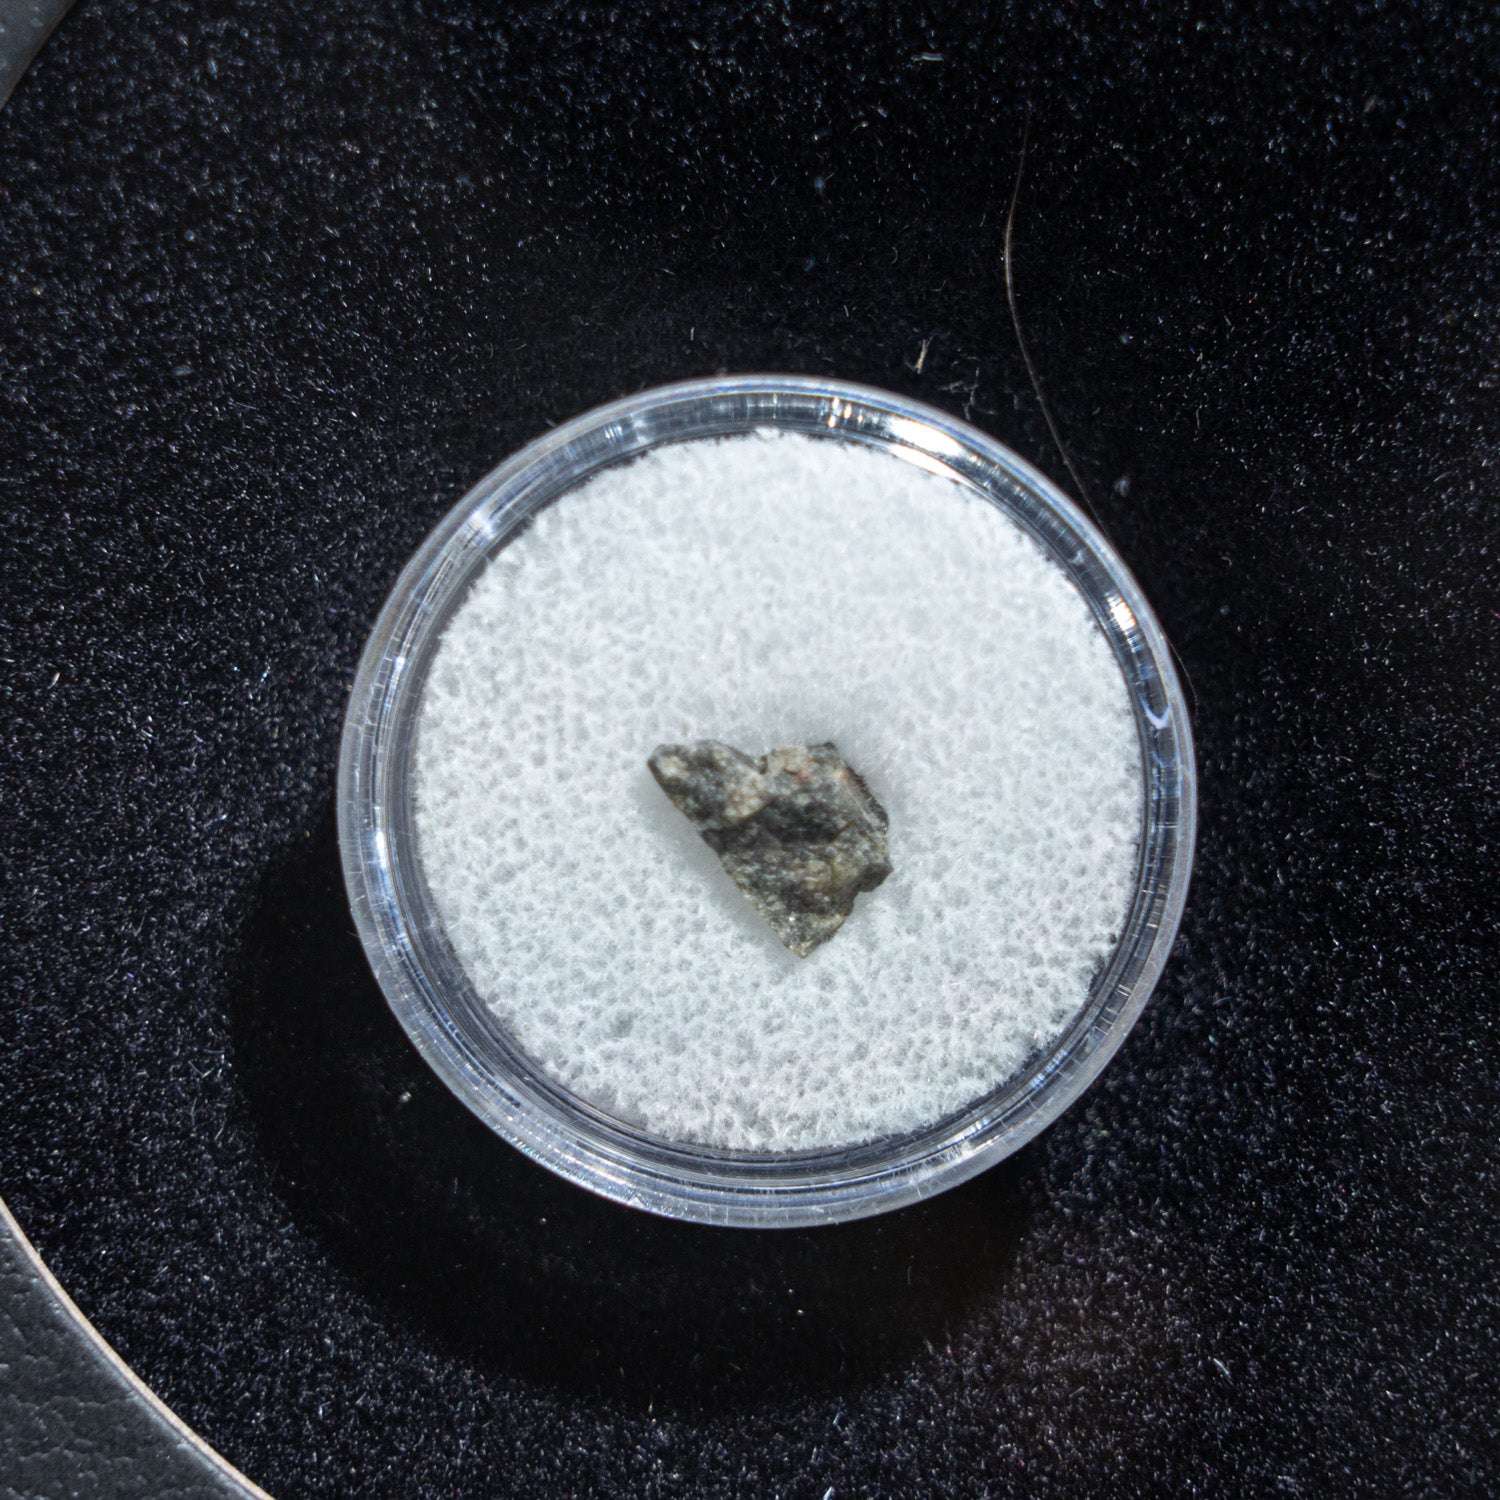 Genuine Tatahouine Meteorite in Glass Display Box